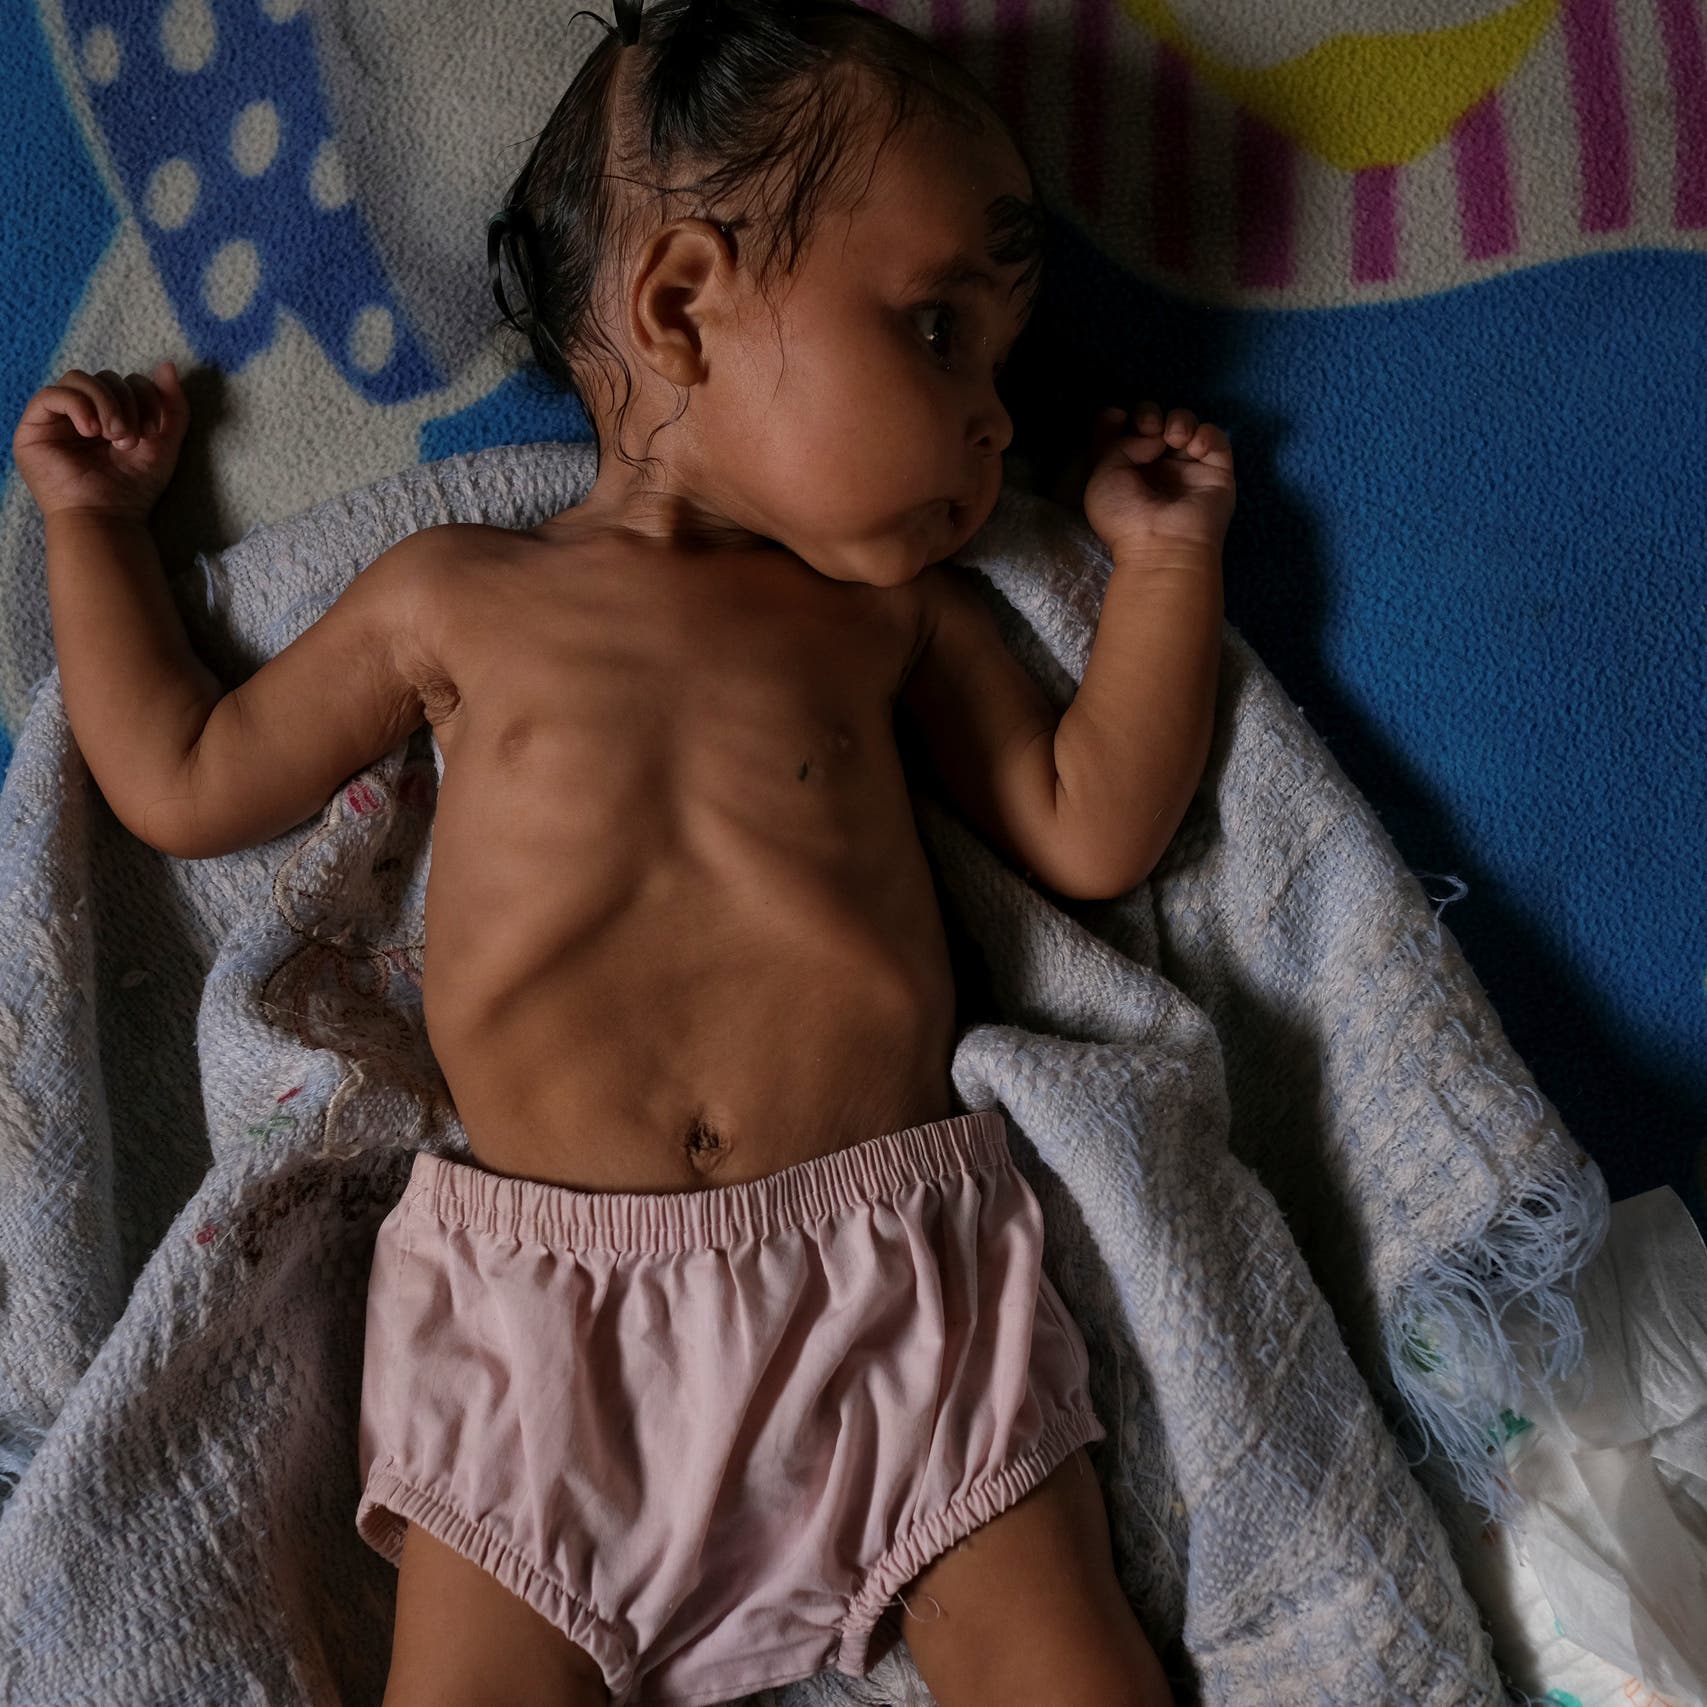 10 آلاف طفل قد يموتون شهريا من سوء التغذية نتيجة كورونا